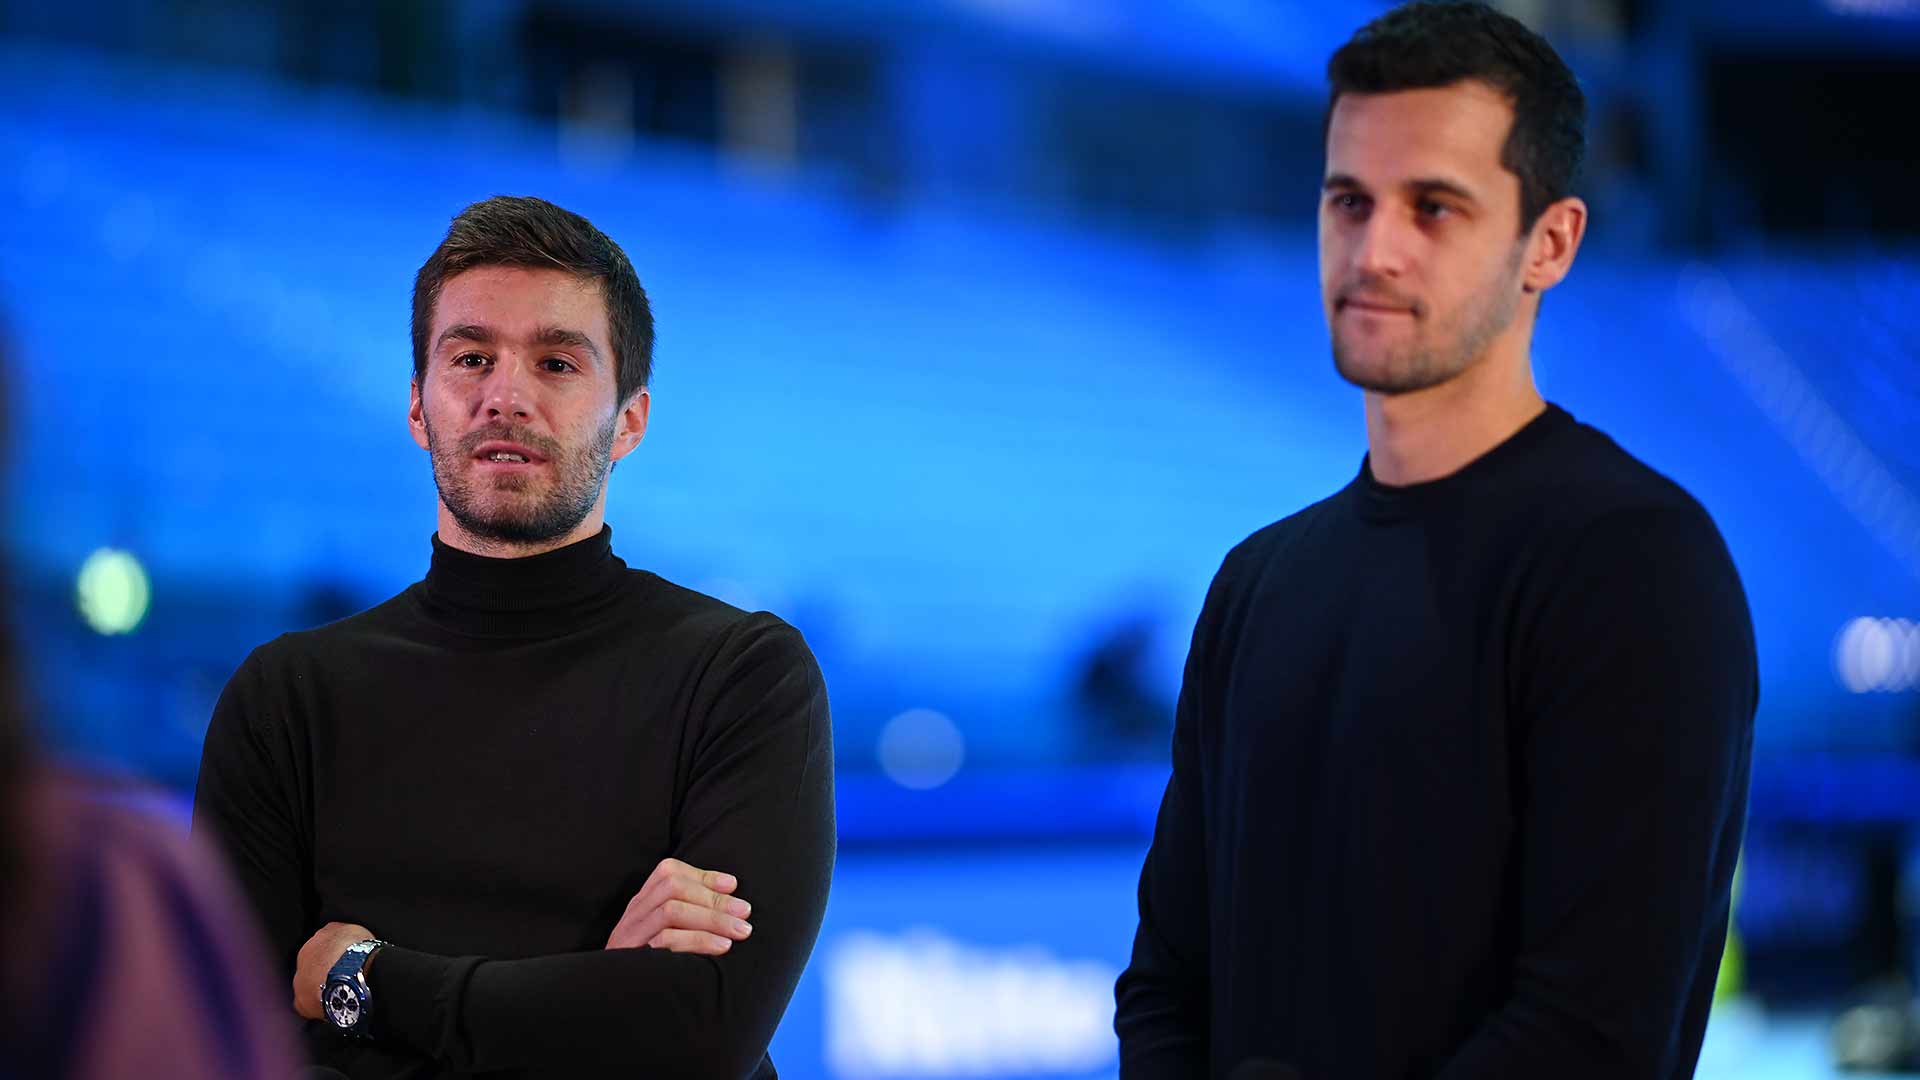 Nikola Pavic and Mate Pavic at Nitto ATP Finals media day in Turin.